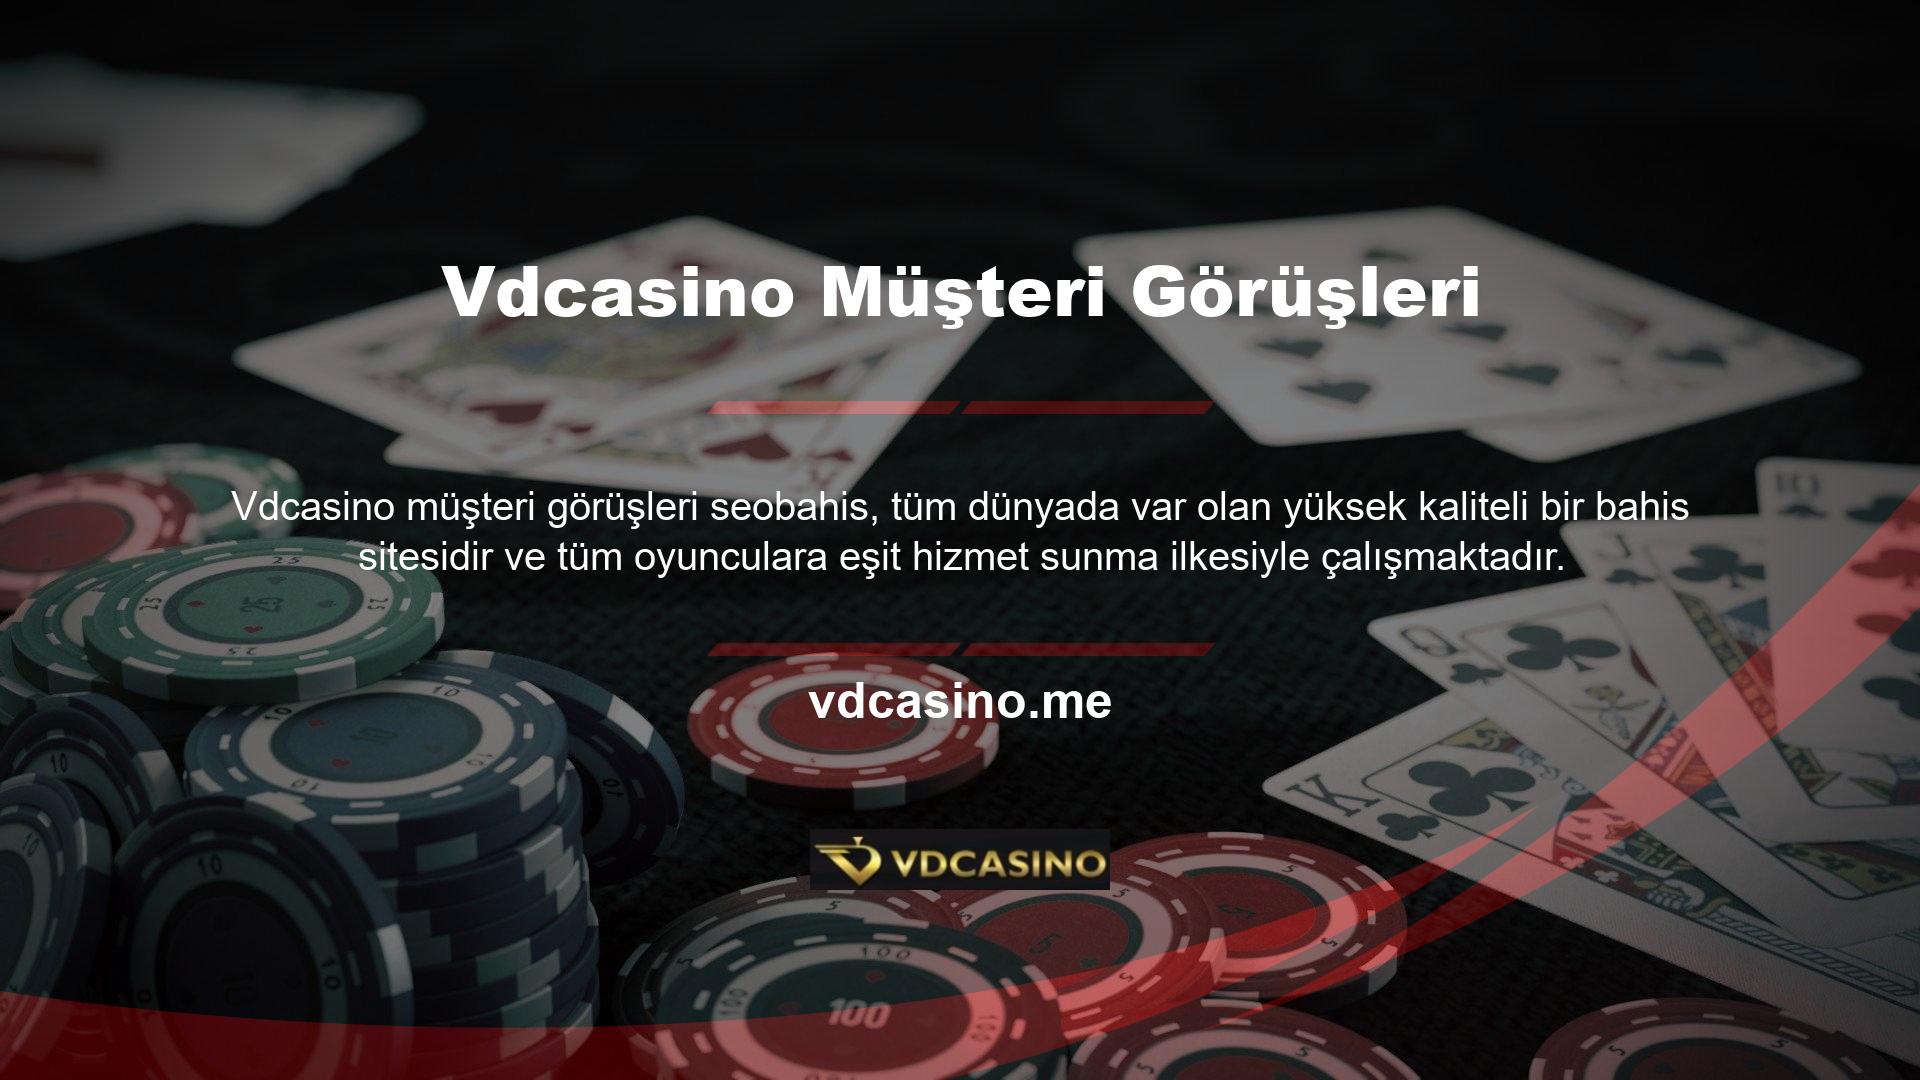 Vdcasino casino sektörünün en tanınmış şirketlerinden biri haline geldi